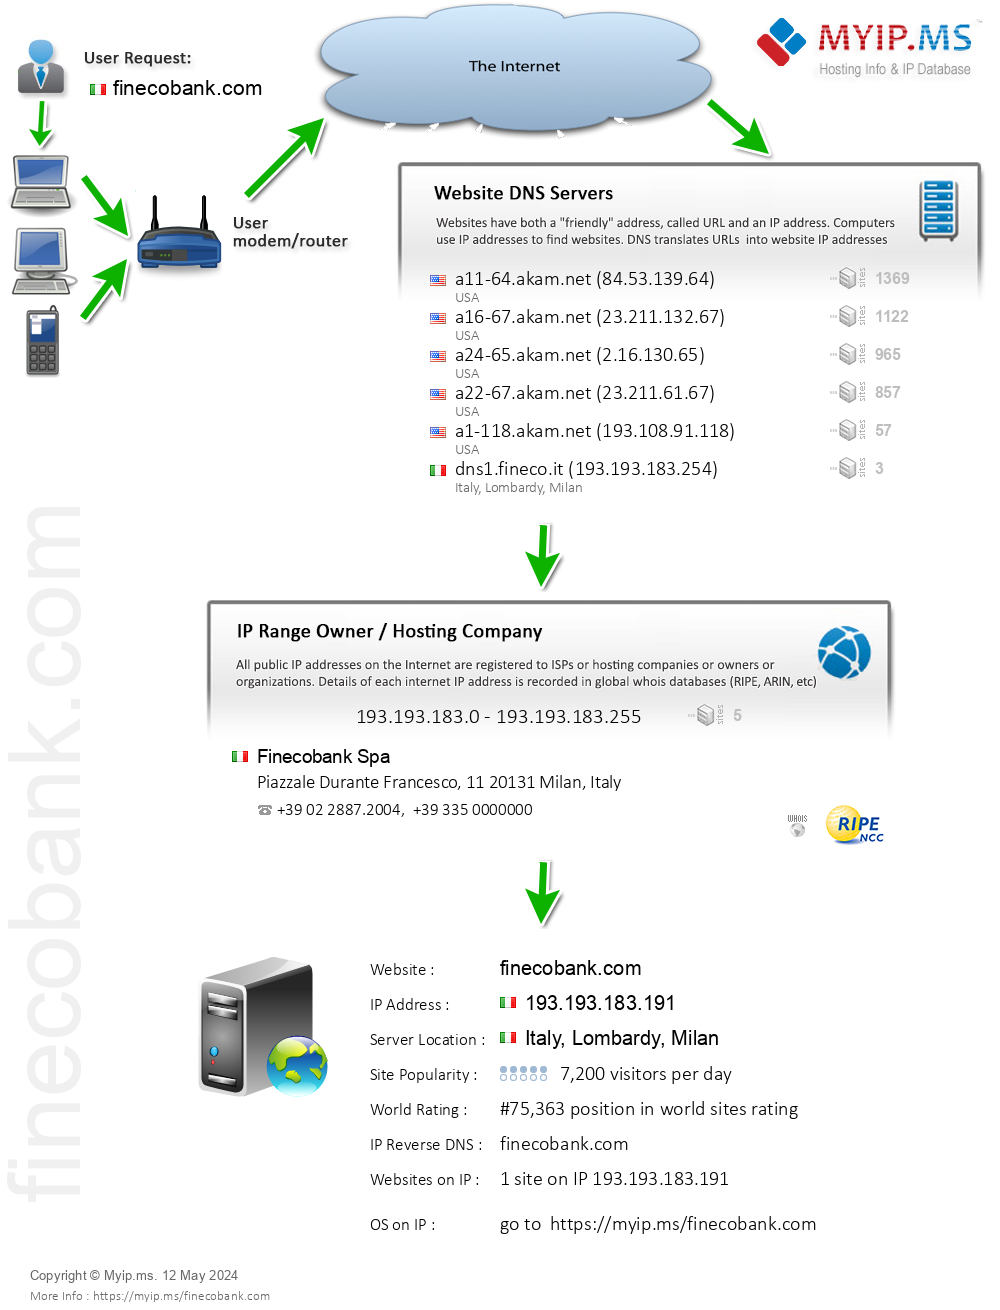 Finecobank.com - Website Hosting Visual IP Diagram